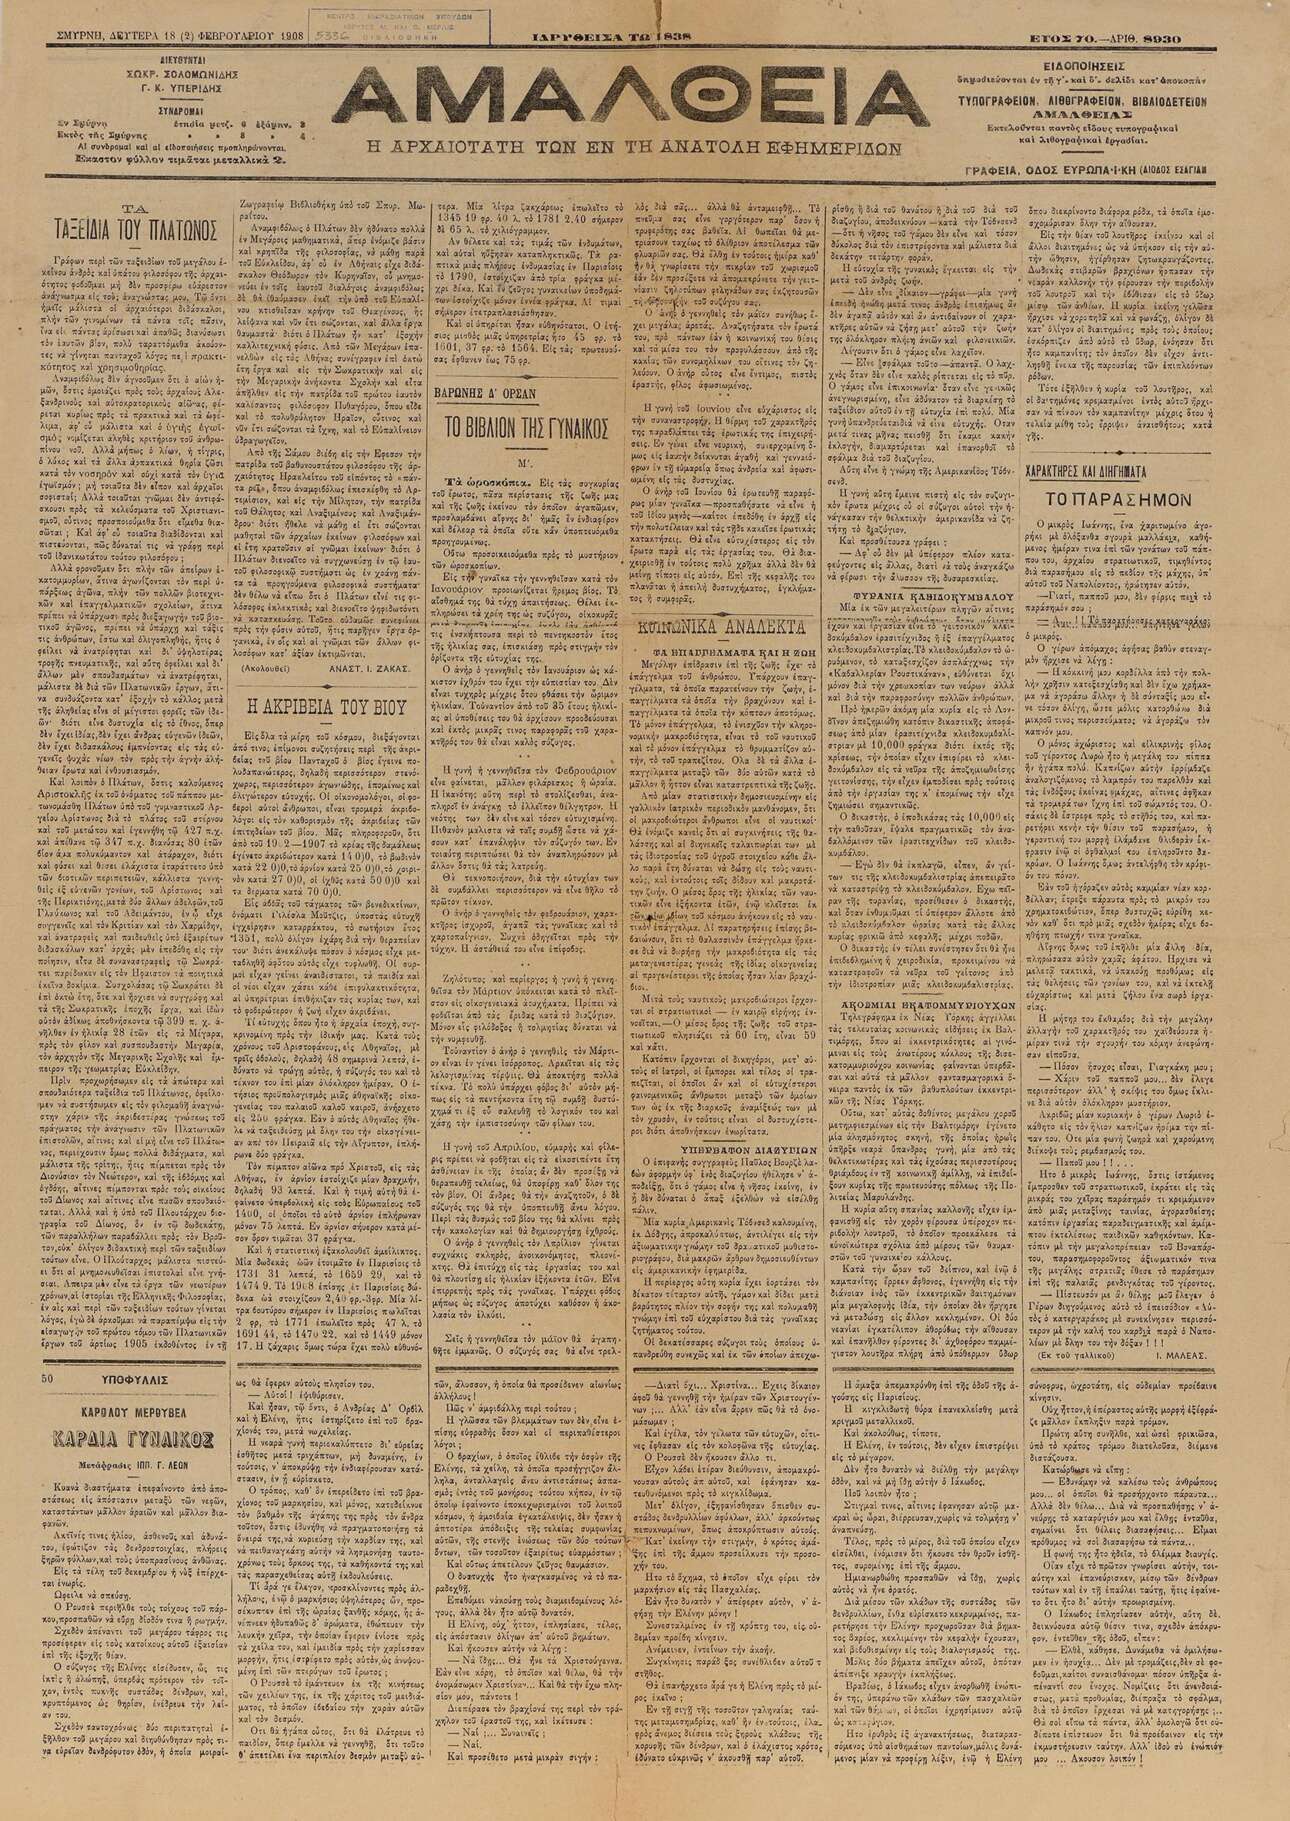 Αμάλθεια, η «αρχαιοτάτη των εν τη Ανατολή εφημερίδων», αρ. φύλλου 8930, 18 Φεβρουαρίου 1908, Σμύρνη